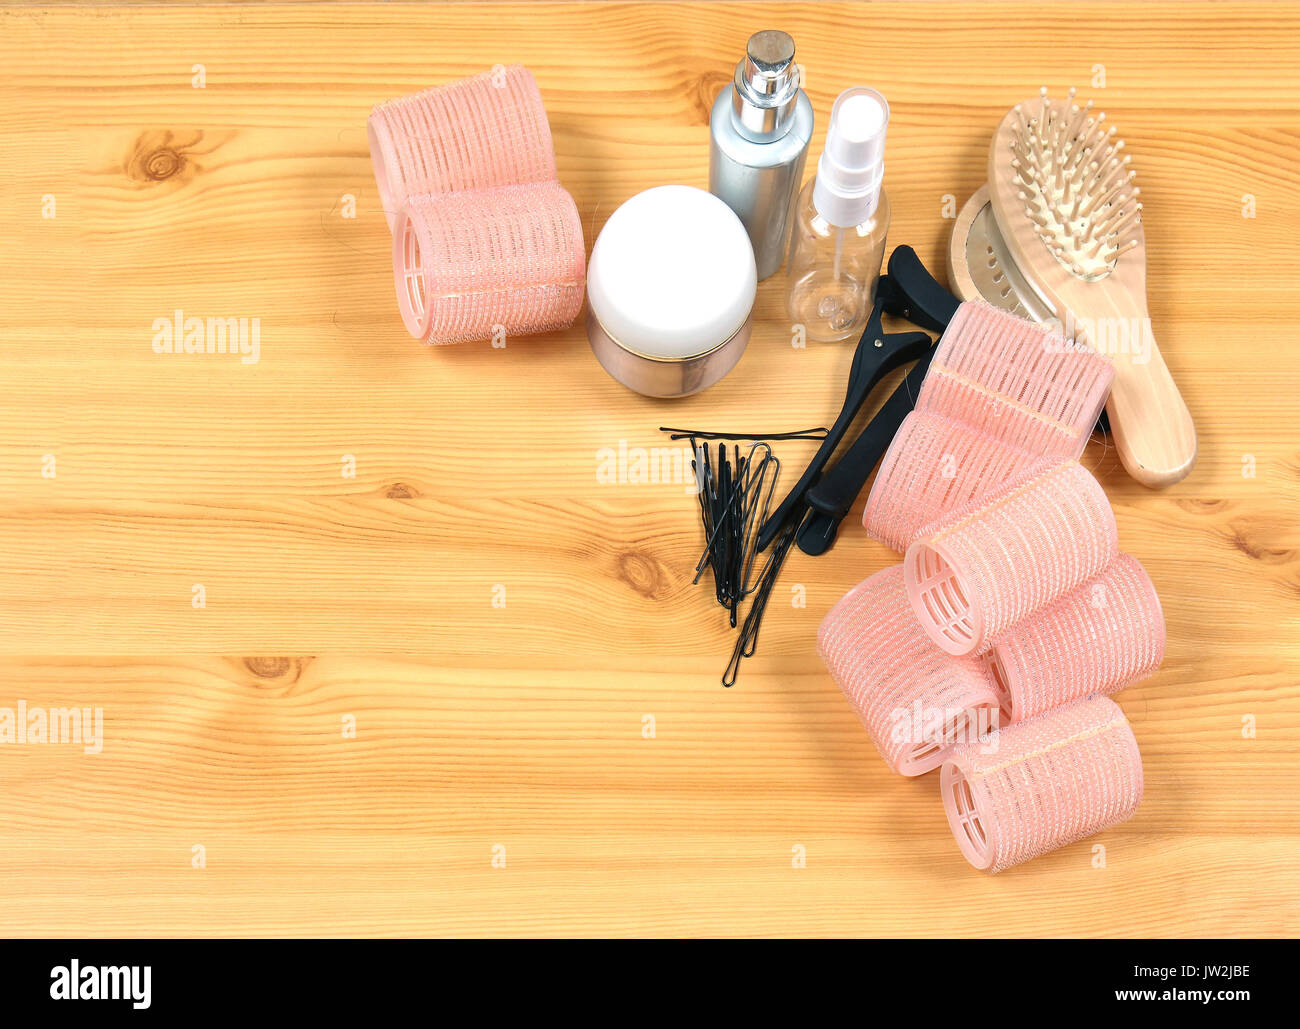 Capelli rosa velcro arricciacapelli insieme con altri accessori per acconciatura Foto Stock